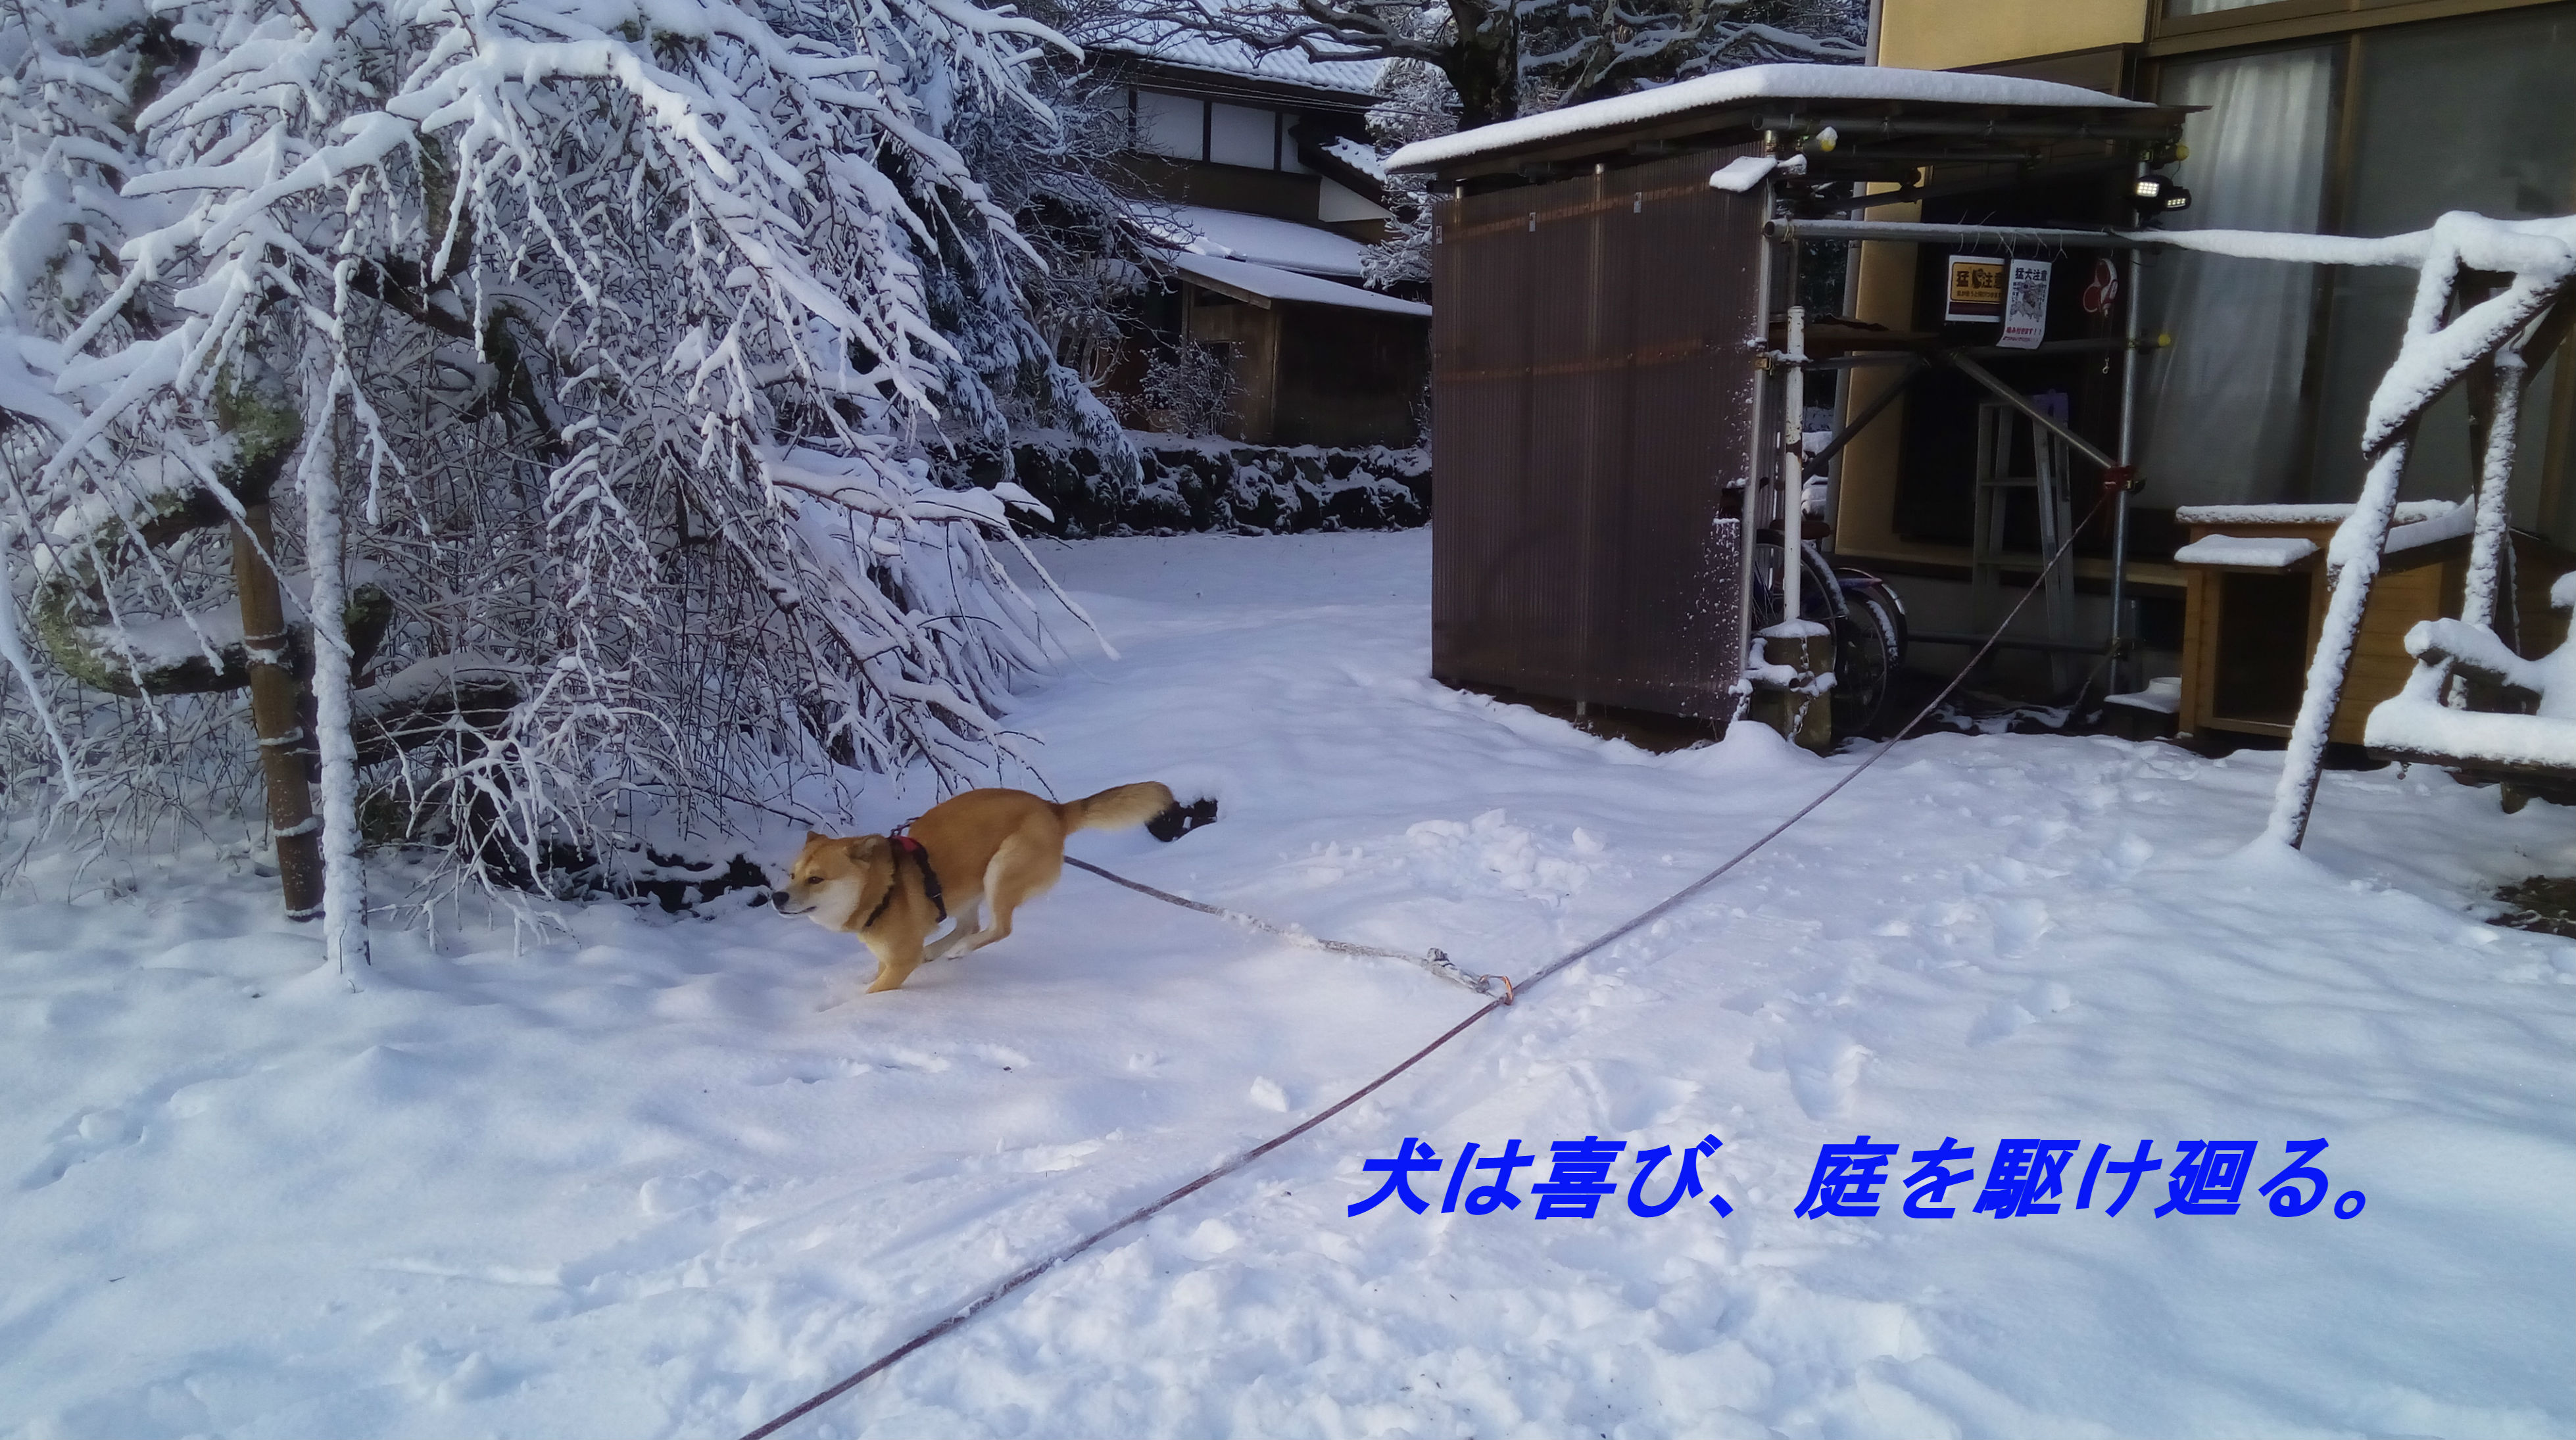 大雪を喜んでいるのは犬と子供だけ、千葉なのに積もった。